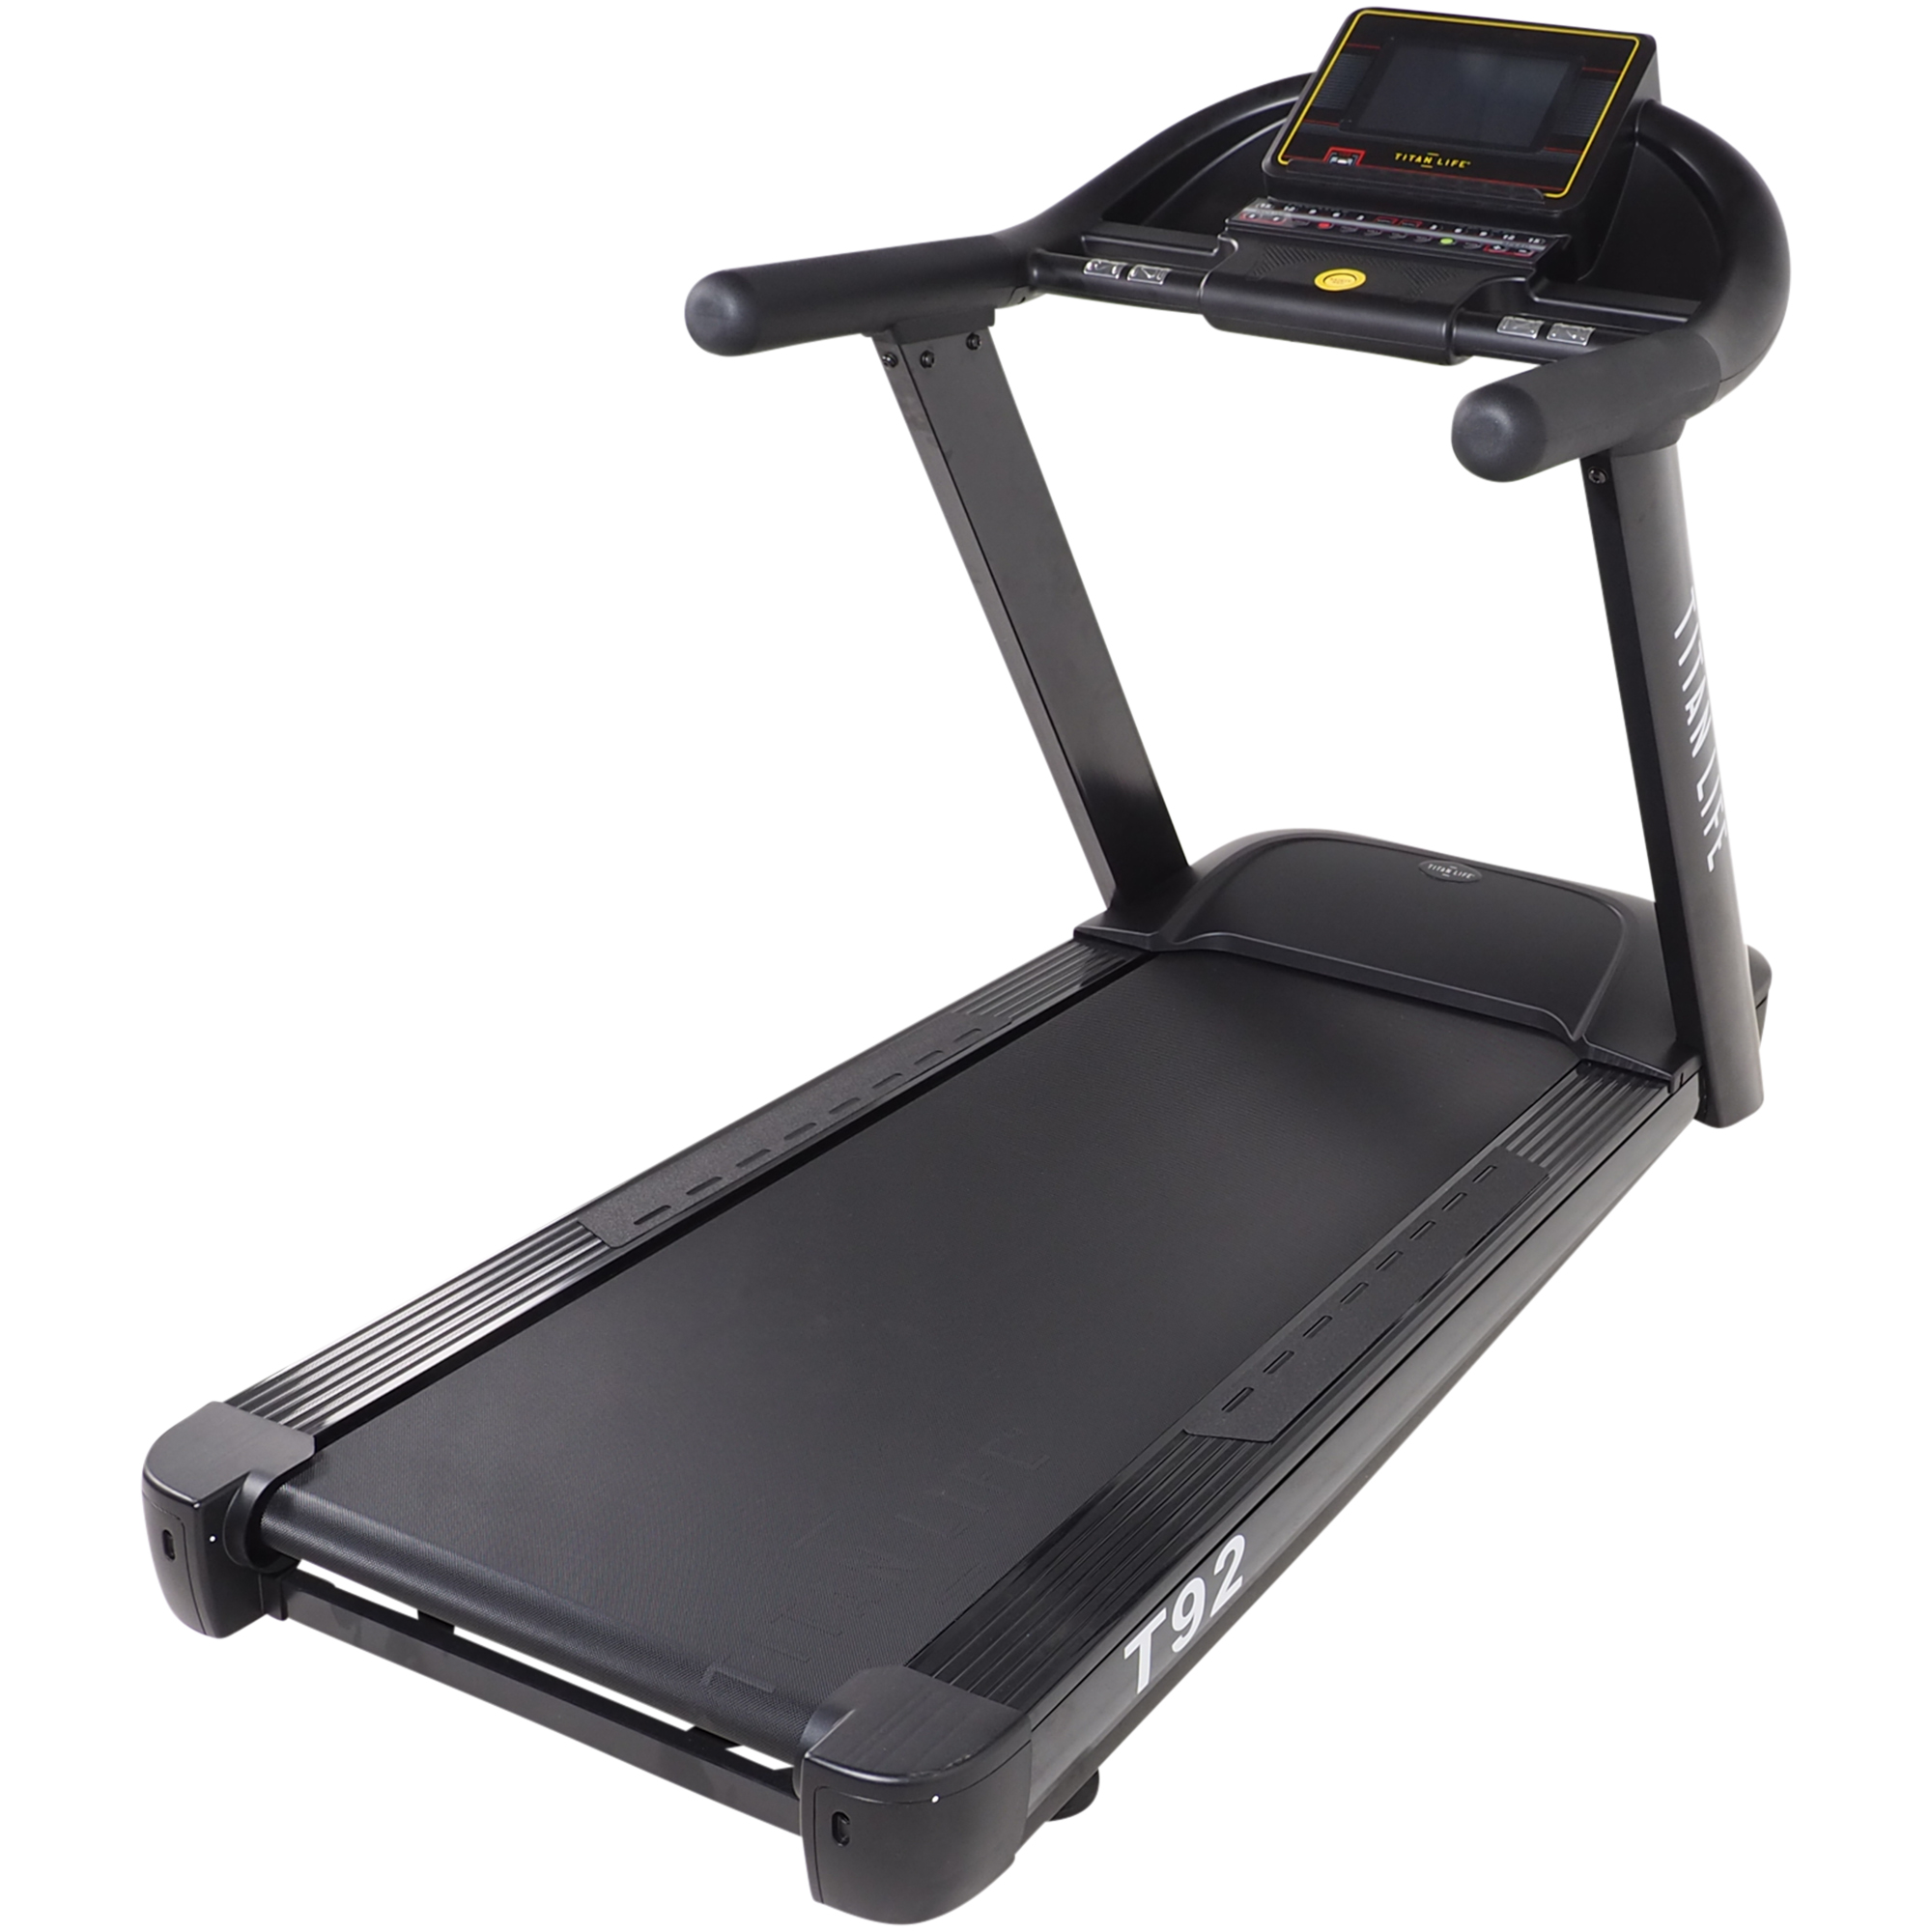 Billede af Titan Life Treadmill T92 - FRI FRAGT - Løbebånd i rigtig god kvalitet - HURTIG LEVERING hos HomeX.dk